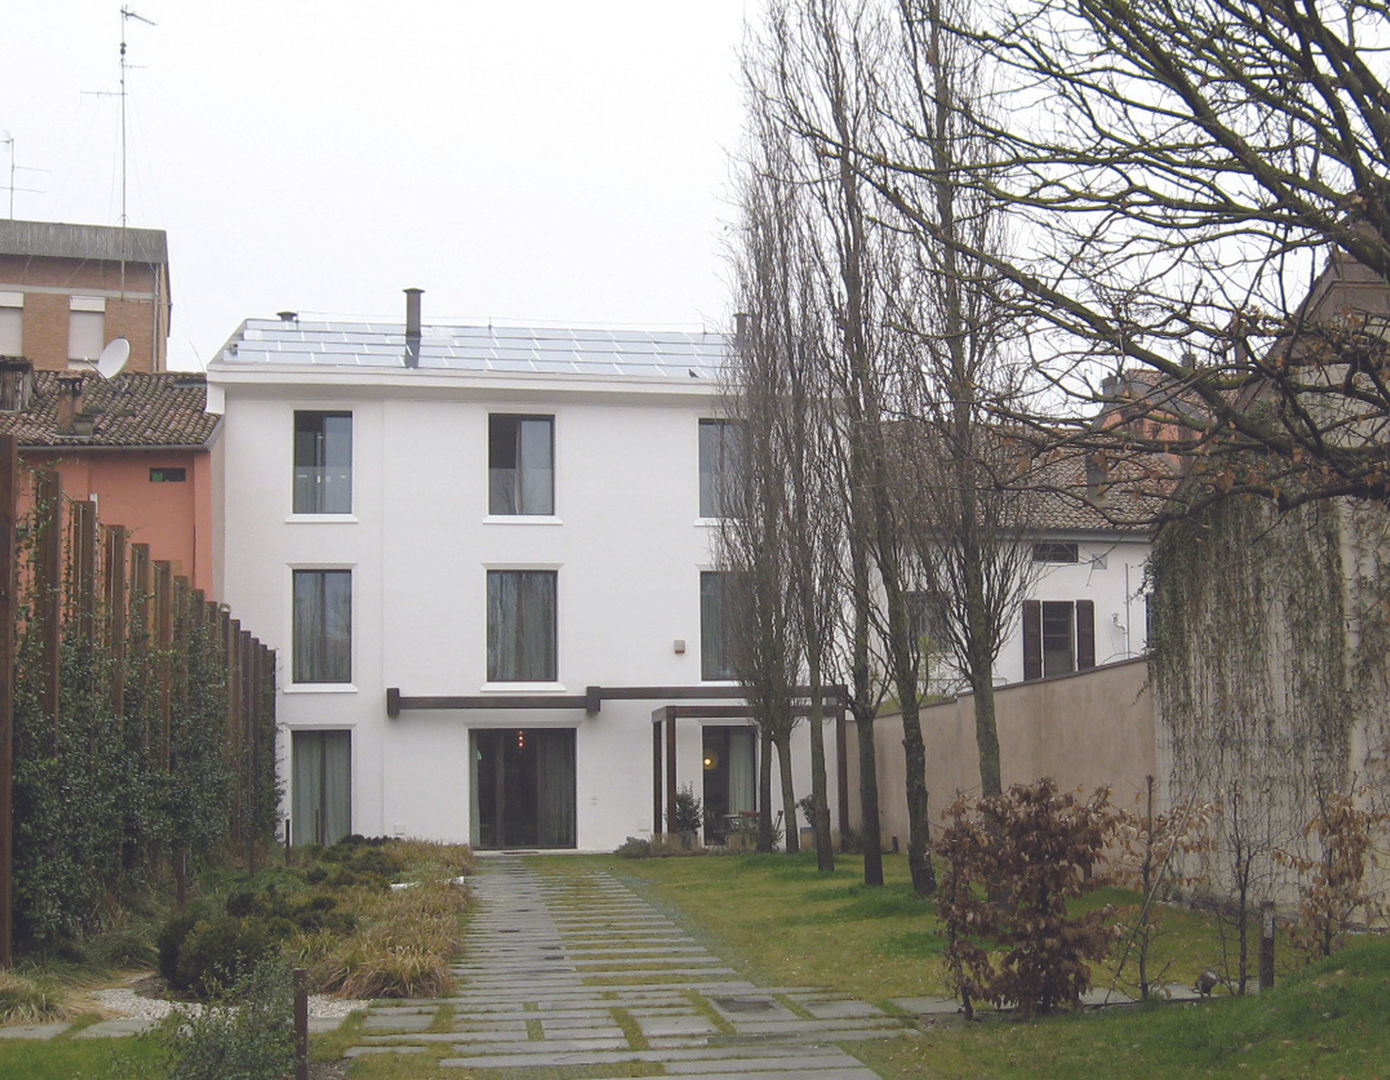 Villa privata a Ferrara, baranzoni architetti baranzoni architetti Casas